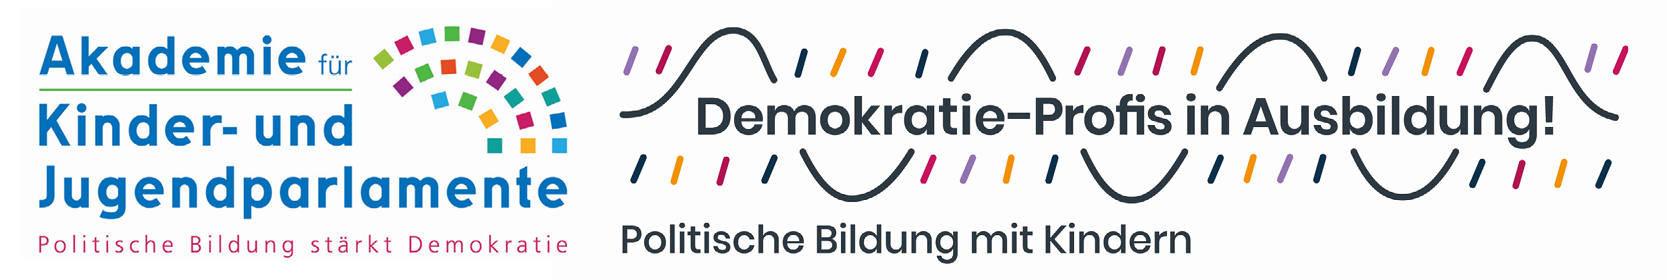 Logos der Akademie Kinder- und Jugendparlamente und der Demokratie-Profis